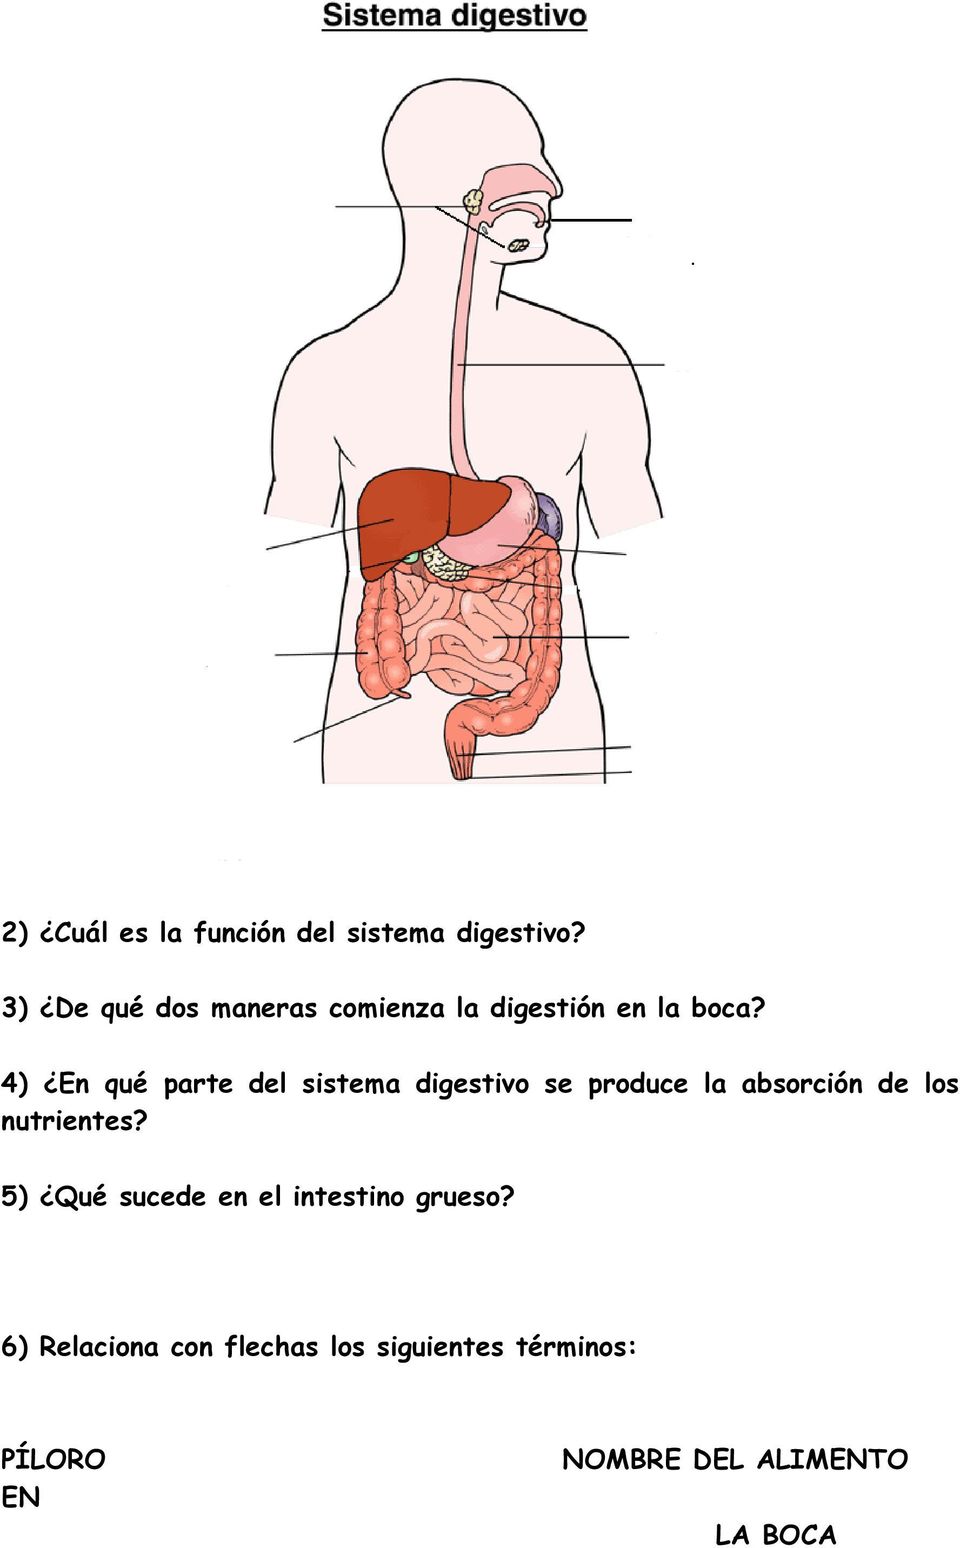 4) En qué parte del sistema digestivo se produce la absorción de los